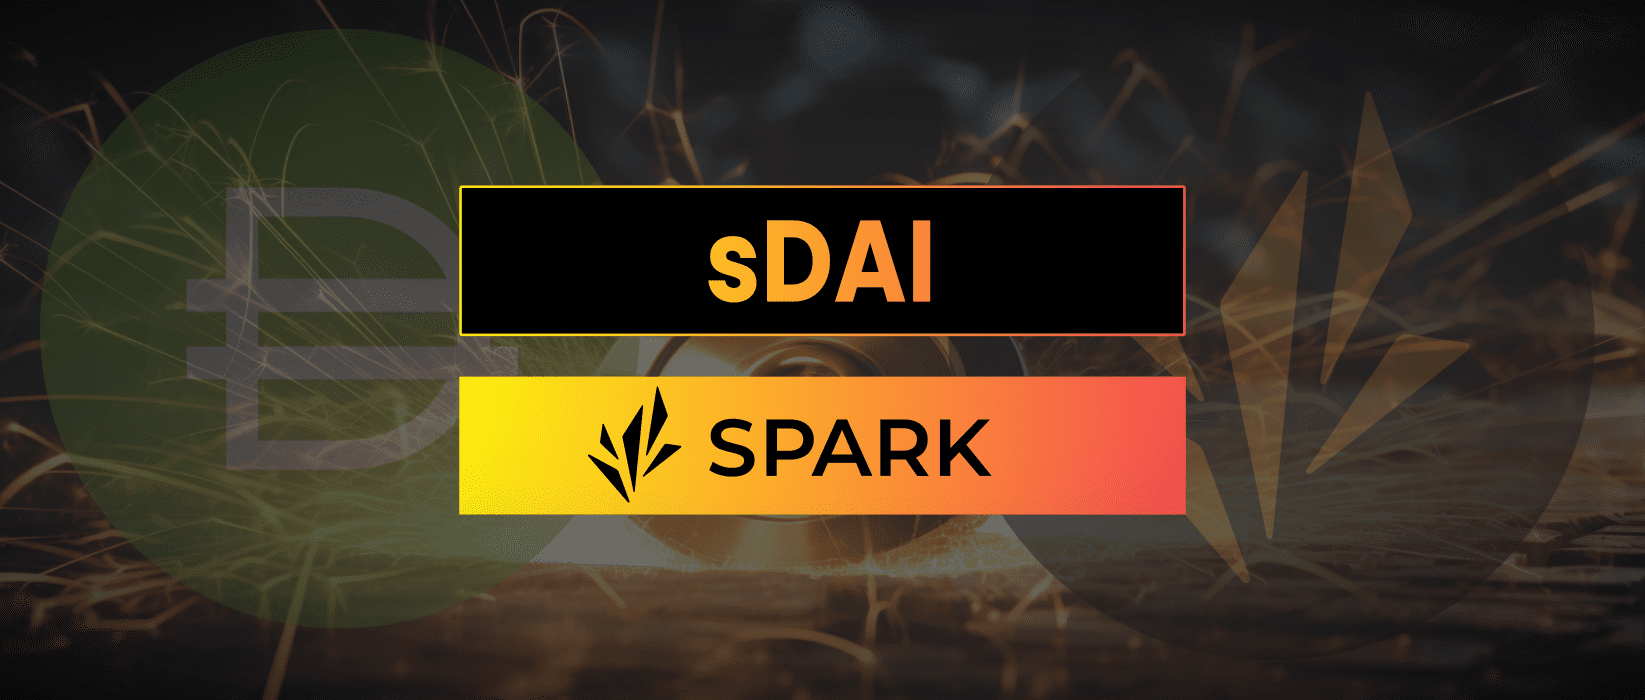 Spark Protocol sDAI | DeFi Analysis Report